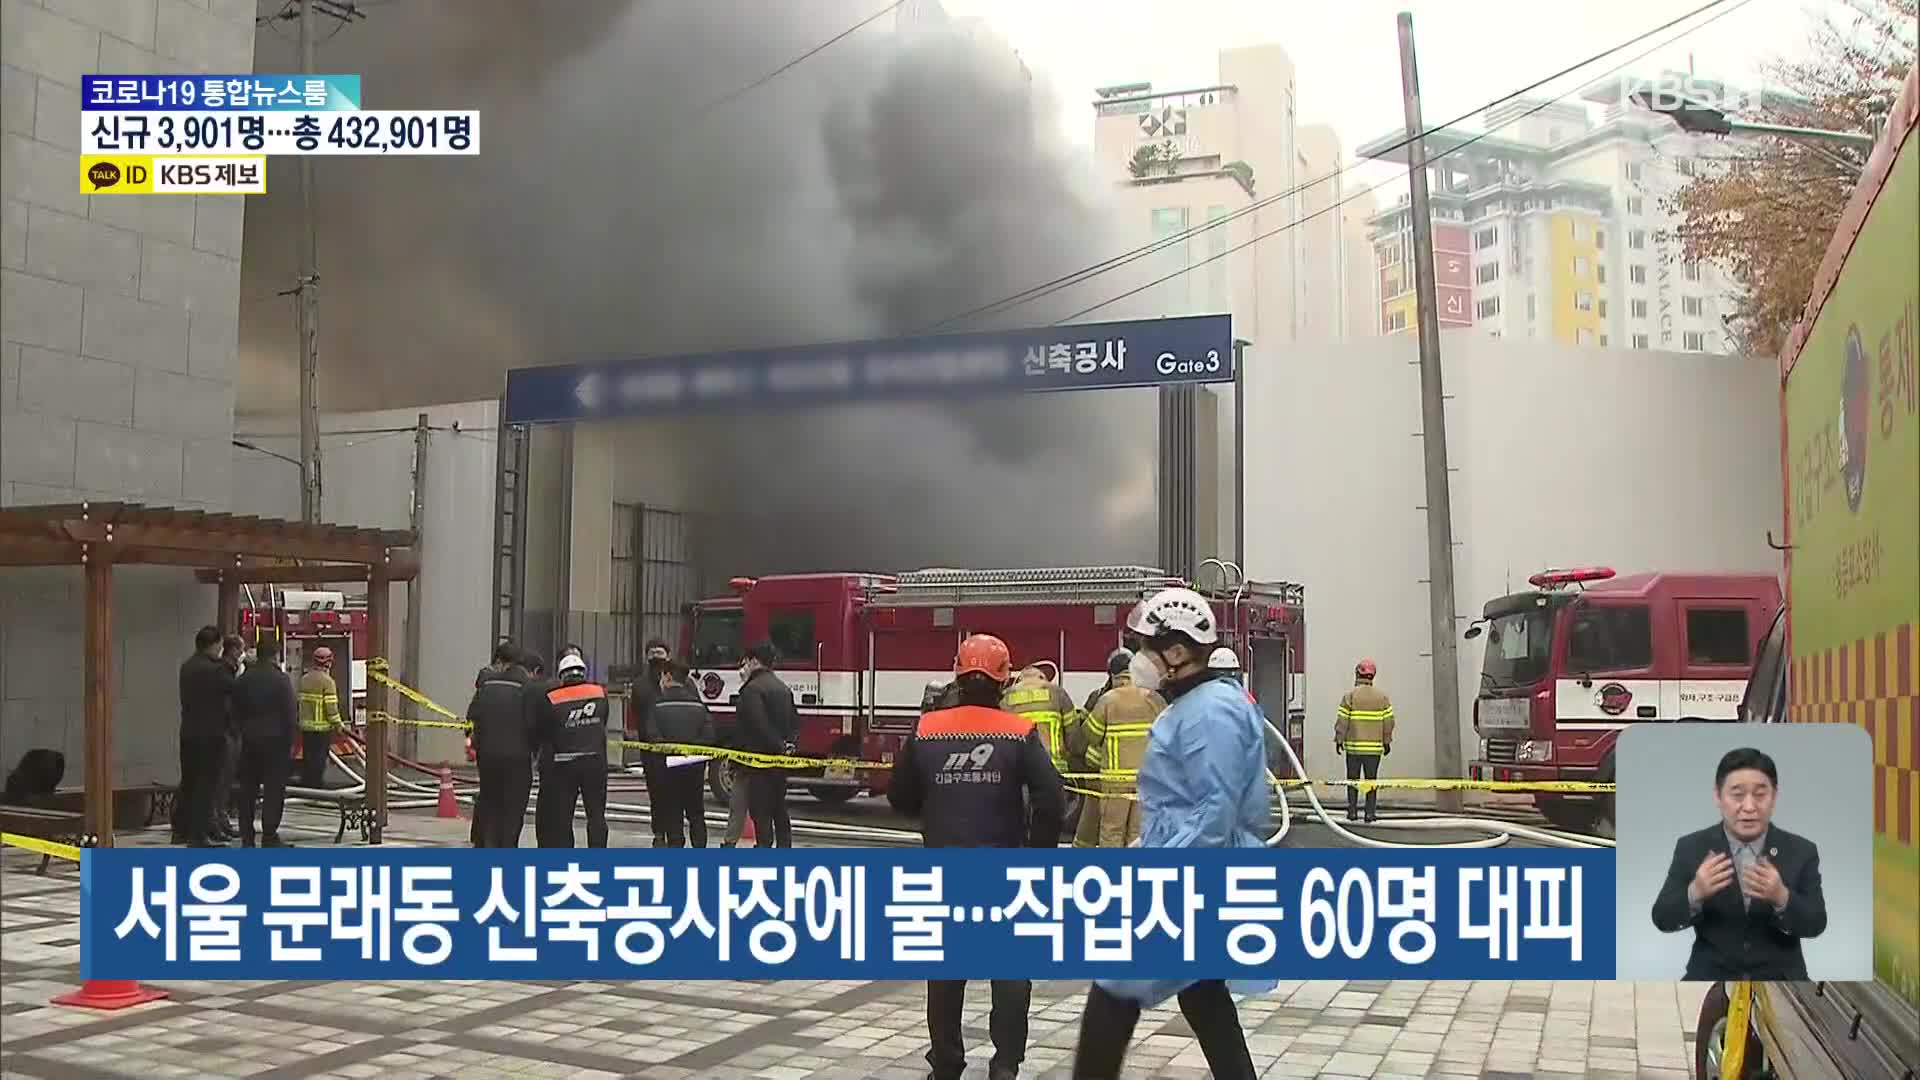 서울 문래동 신축공사장에 불…작업자 등 60명 대피